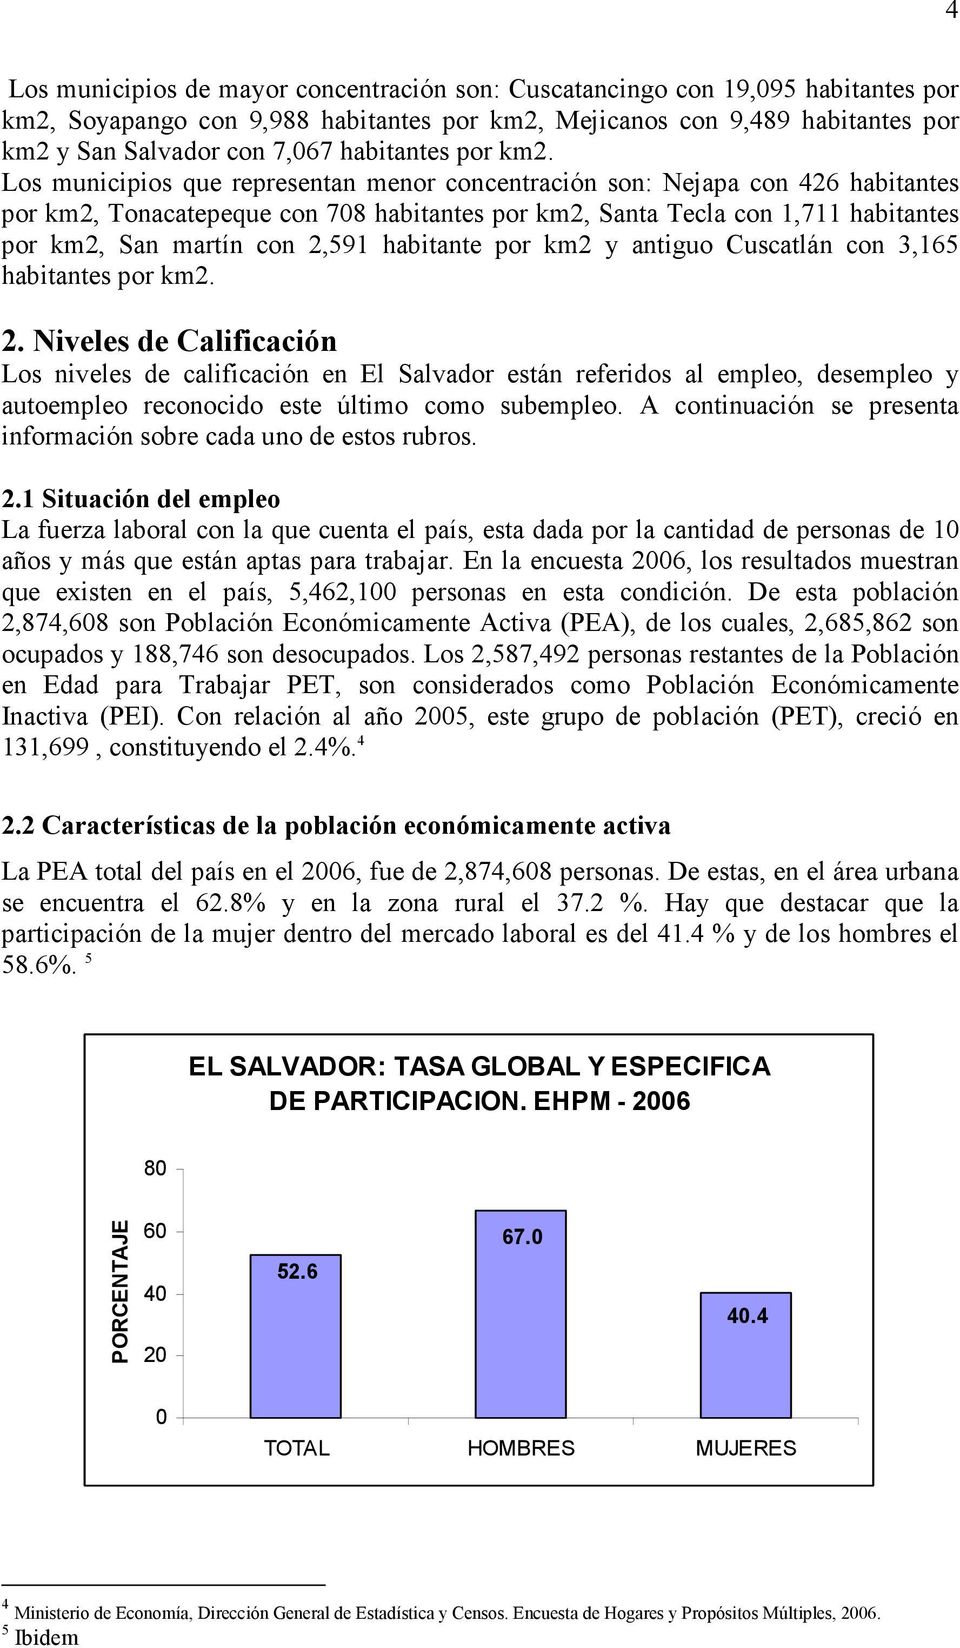 Los municipios que representan menor concentración son: Nejapa con 426 habitantes por km2, Tonacatepeque con 708 habitantes por km2, Santa Tecla con 1,711 habitantes por km2, San martín con 2,591